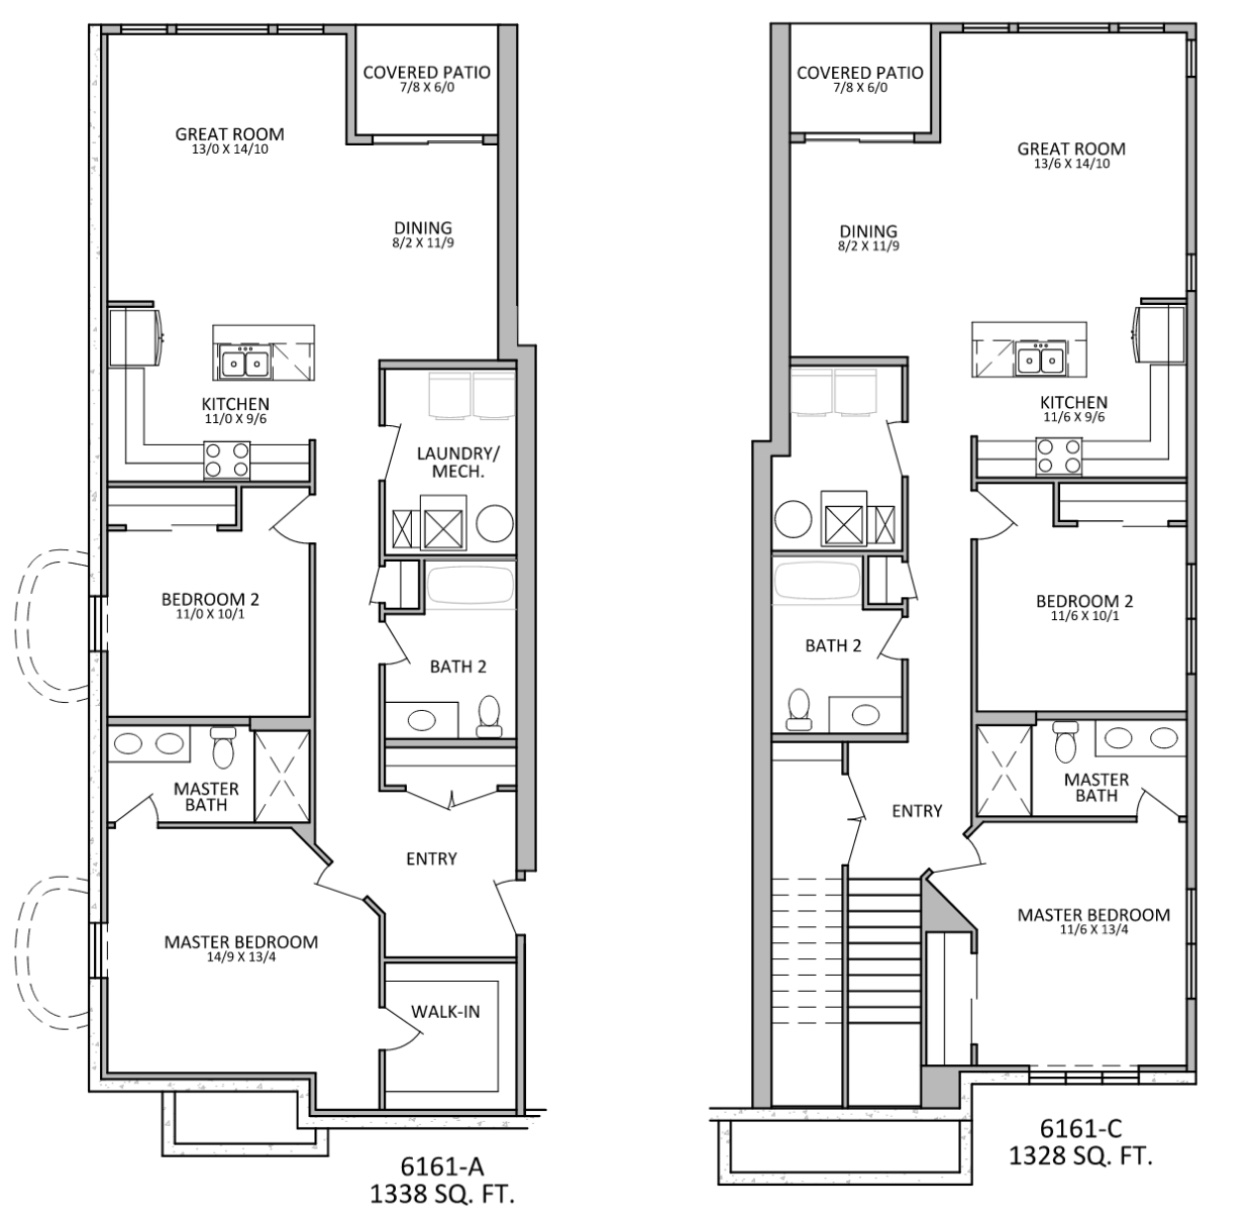 Condos at Marina Shores - Floorplan - 2 Bedroom